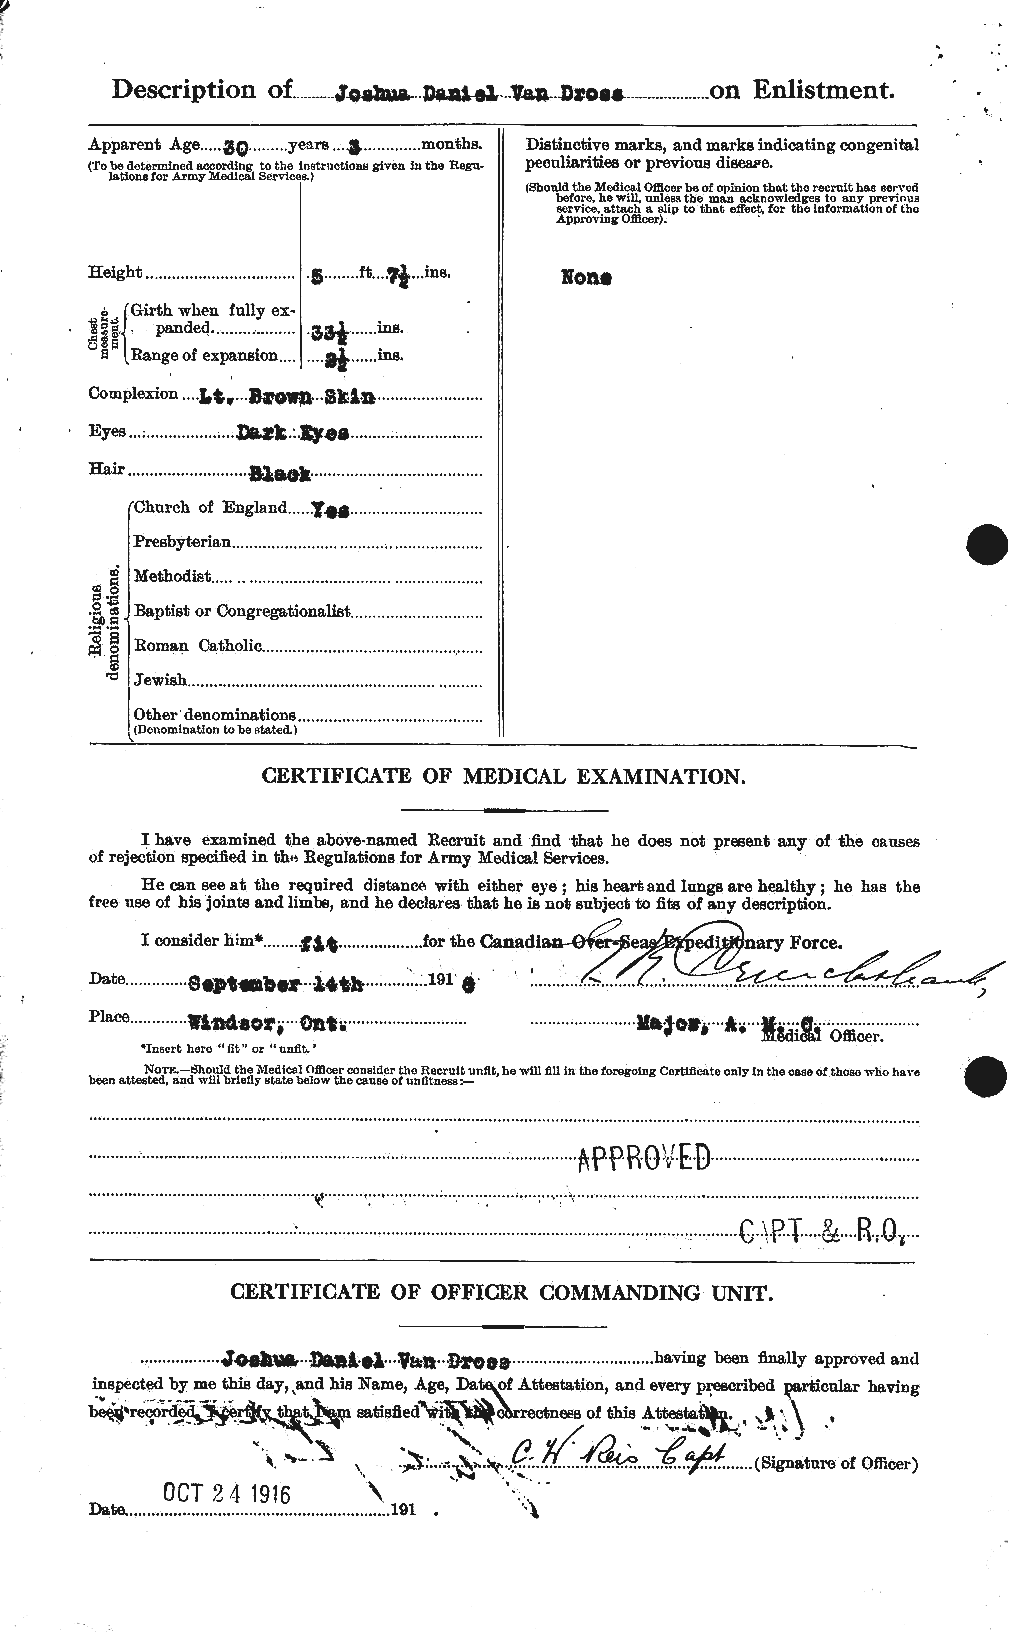 Dossiers du Personnel de la Première Guerre mondiale - CEC 647359b